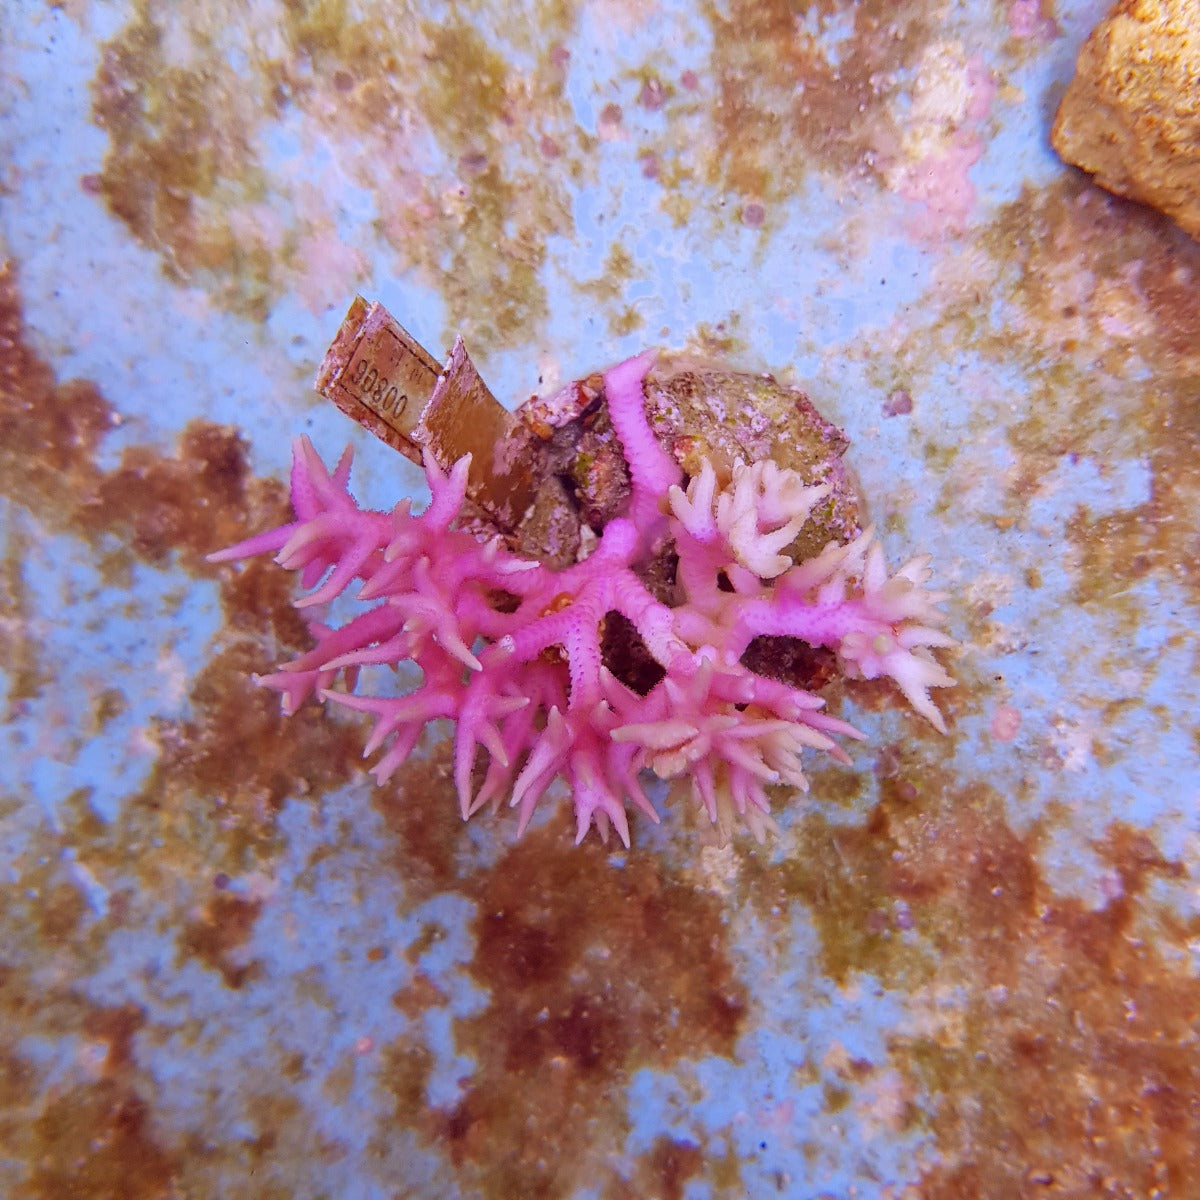 Seriatopora hystrix (Pink)